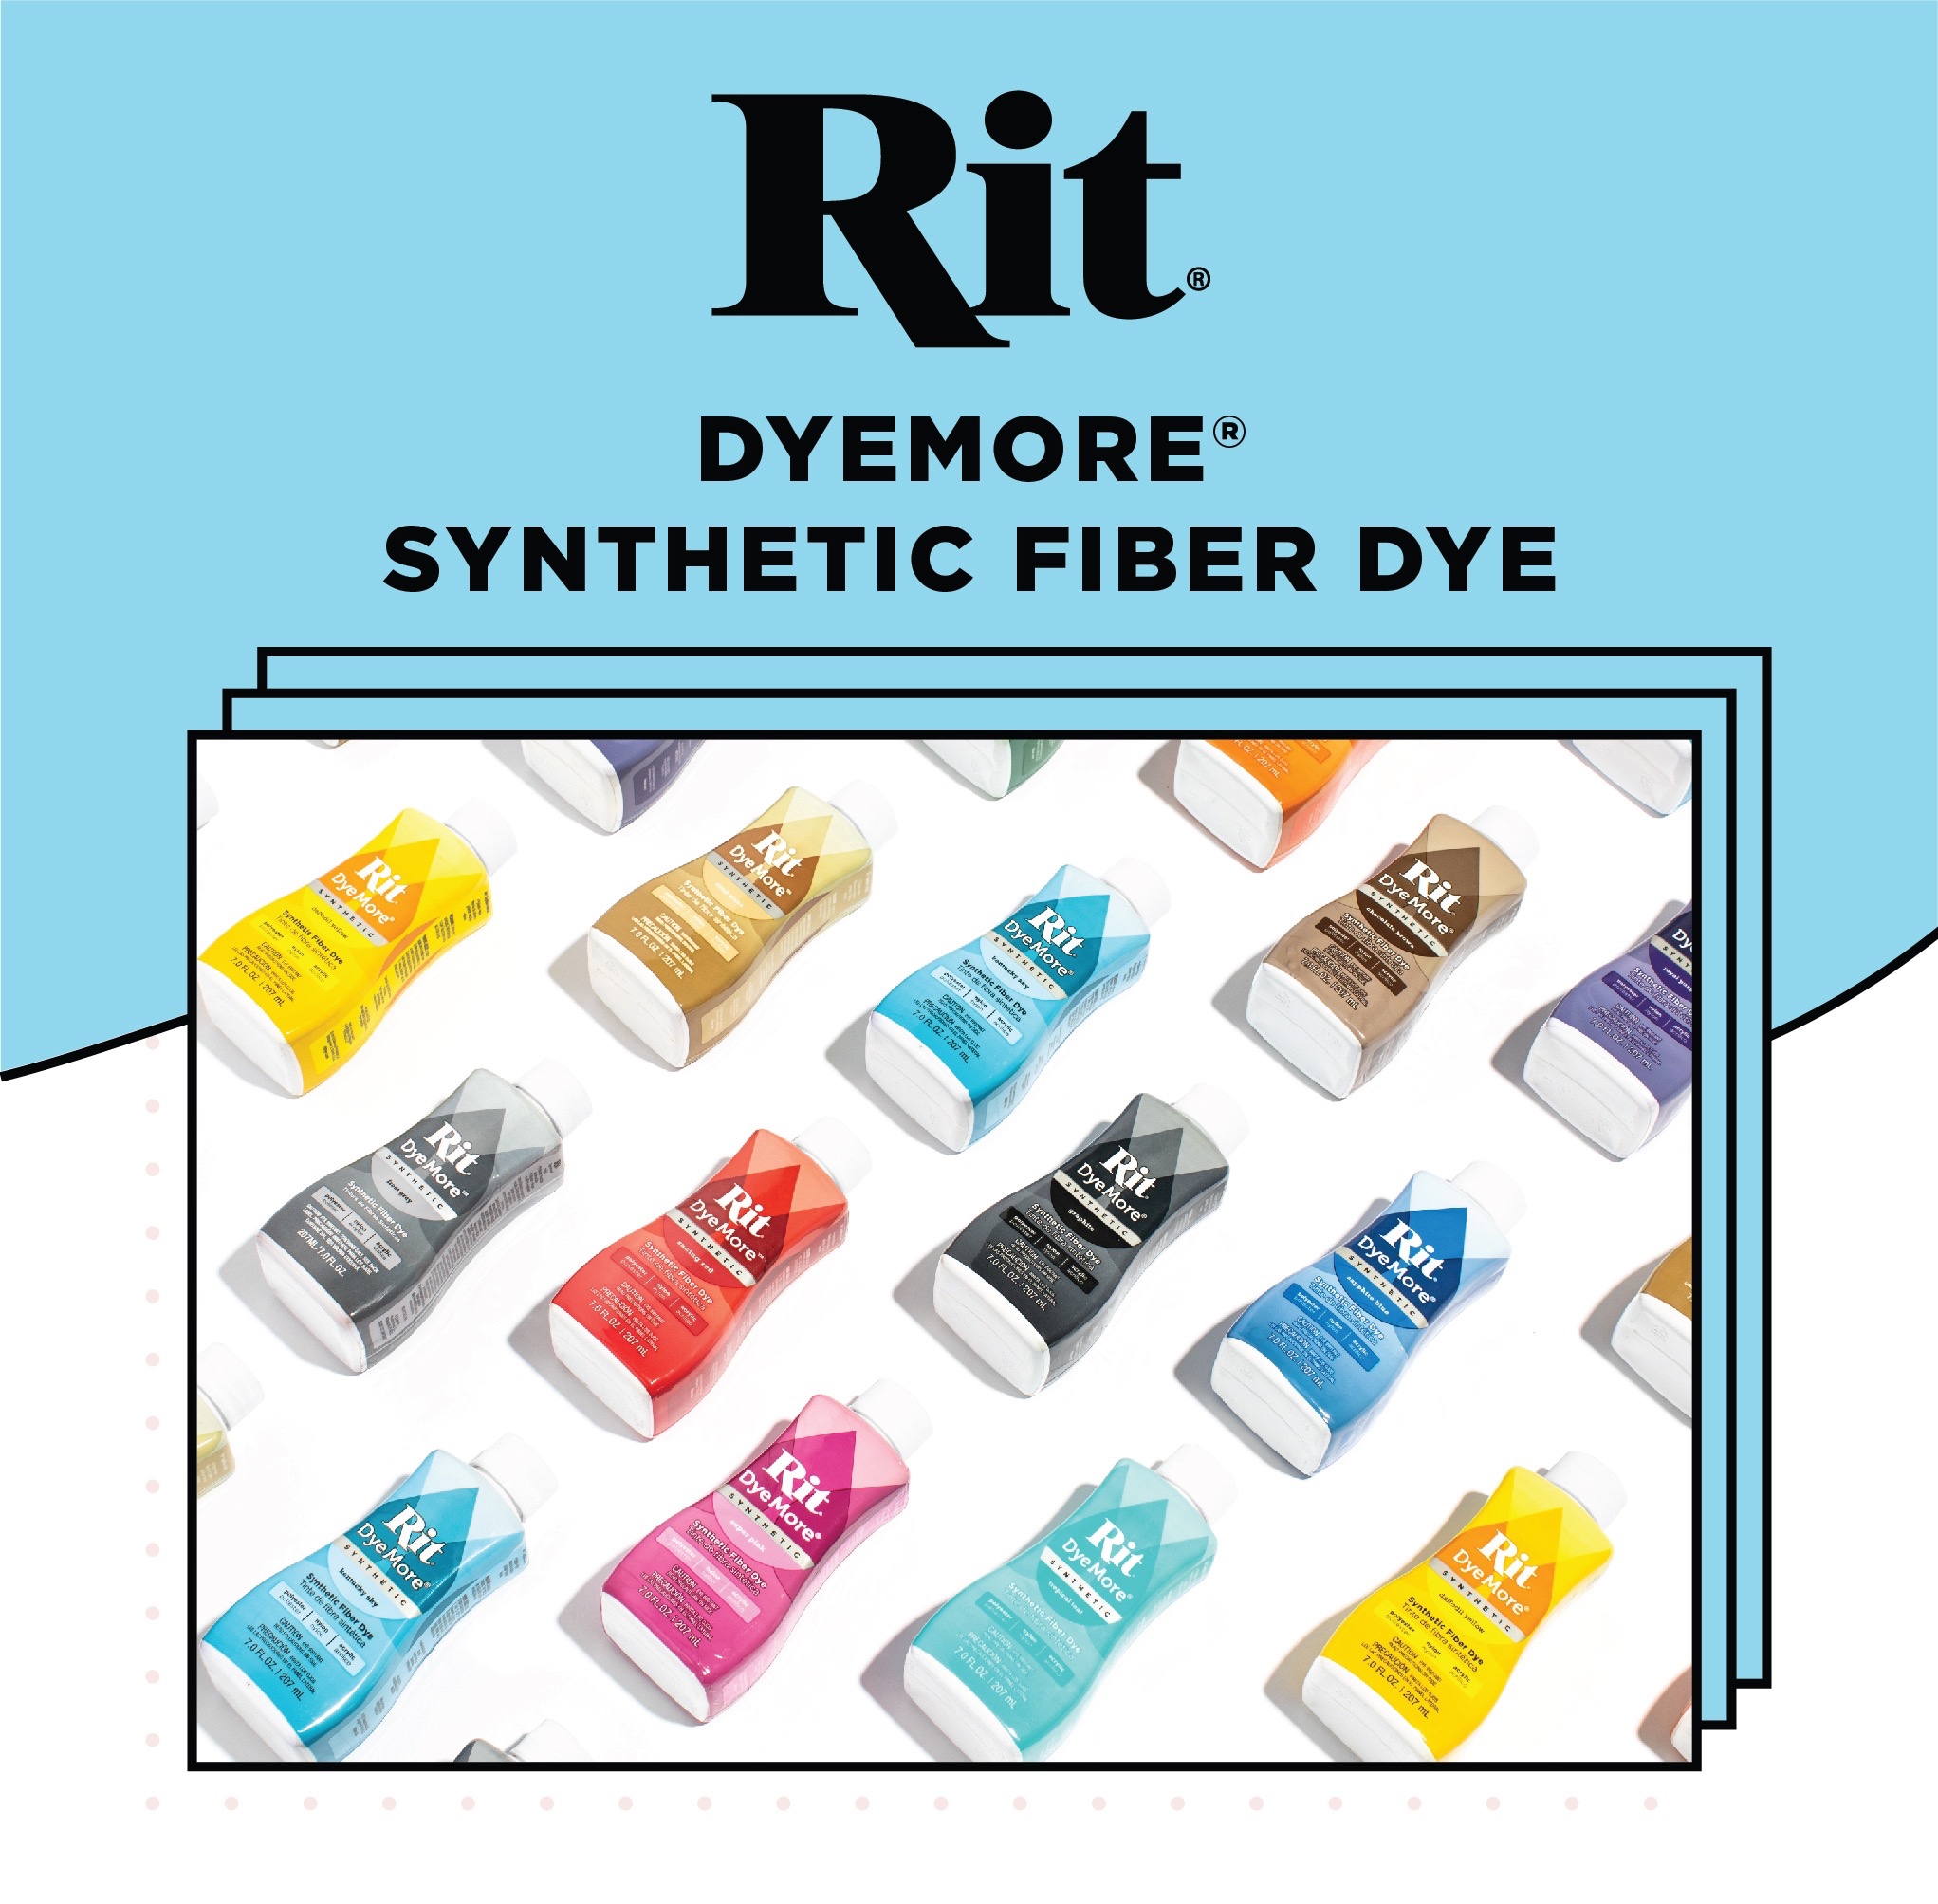 Rit Dye More Synthetic Fiber Dye Chocolate Brown